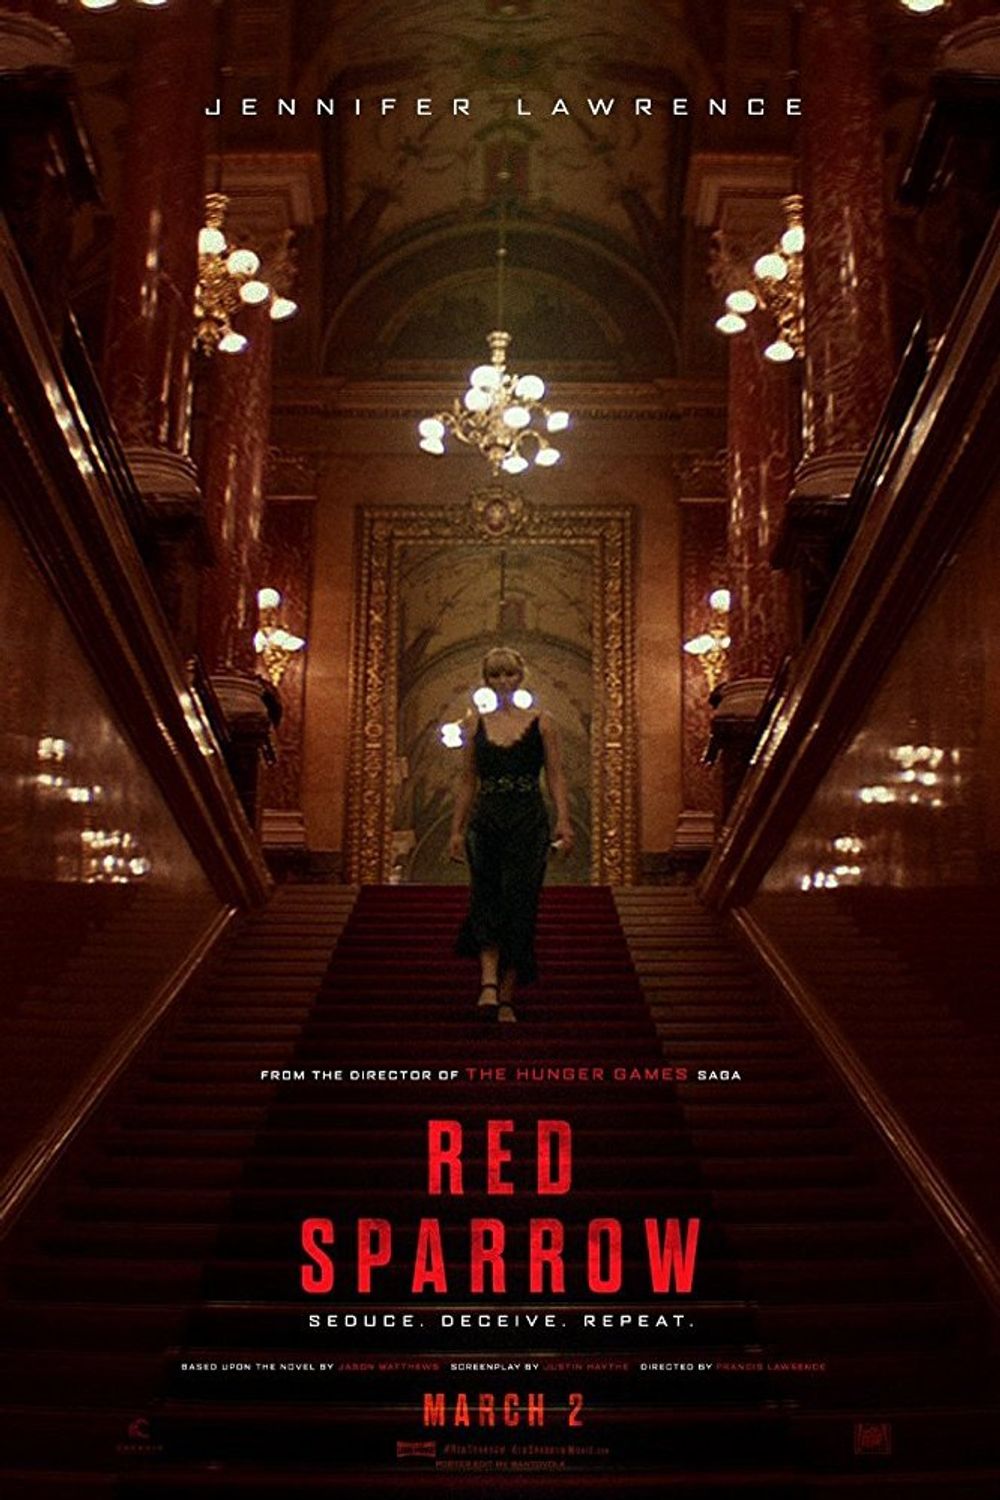 Red Sparrow Moviebuff.com